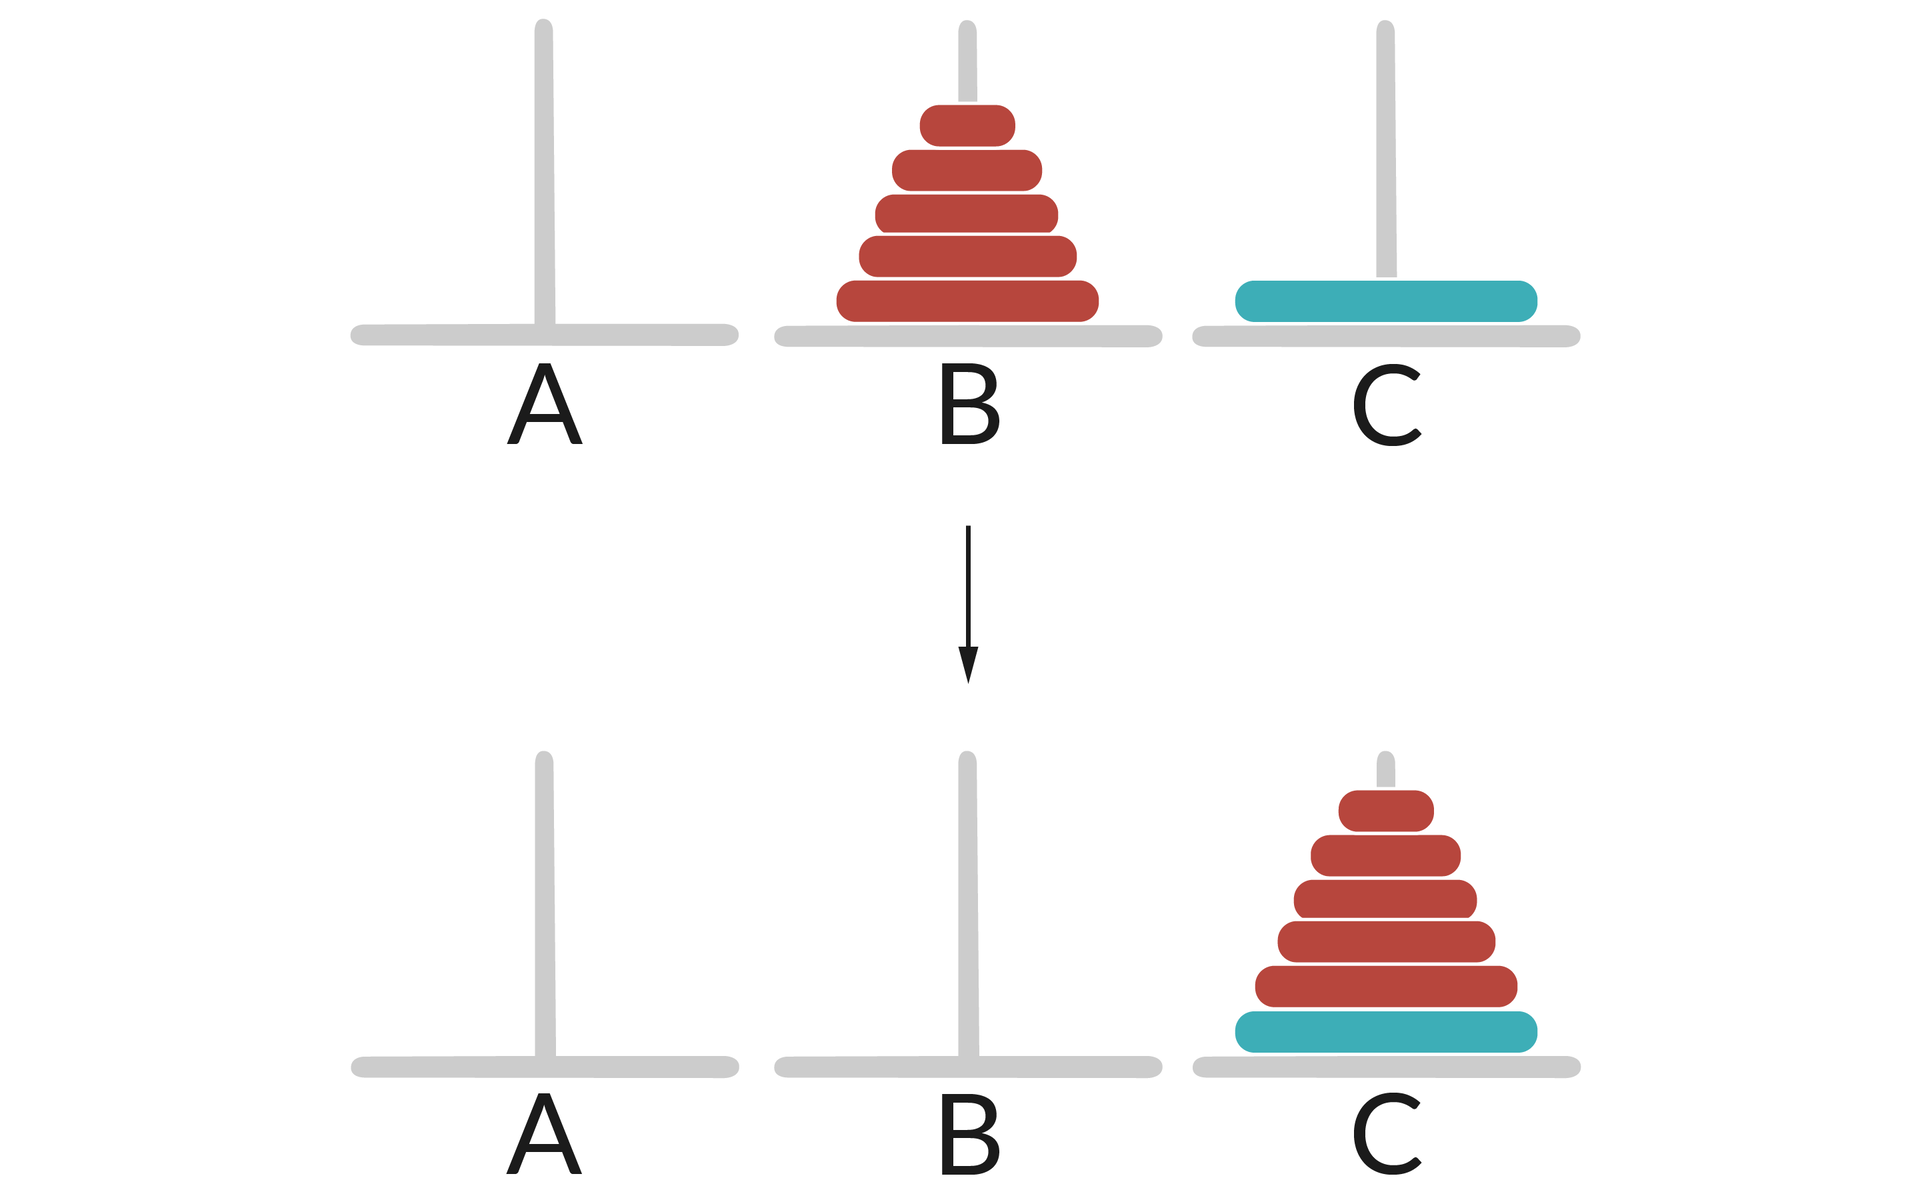 Ilustracja przedstawia dwa rzędy słupków: A, B, C.  Na słupku B umieszczonych jest 5 krążków w kolejności od największego do najmniejszego koloru czerwonego.  Na słupku C znajduje się pojedynczy duży krążek koloru niebieskiego.  W drugim rzędzie na słupku C umieszczonych jest 6 krążków w kolejności od największego do najmniejszego.  Pierwszy największy krążek jest koloru niebieskiego, a reszta czerwonego.